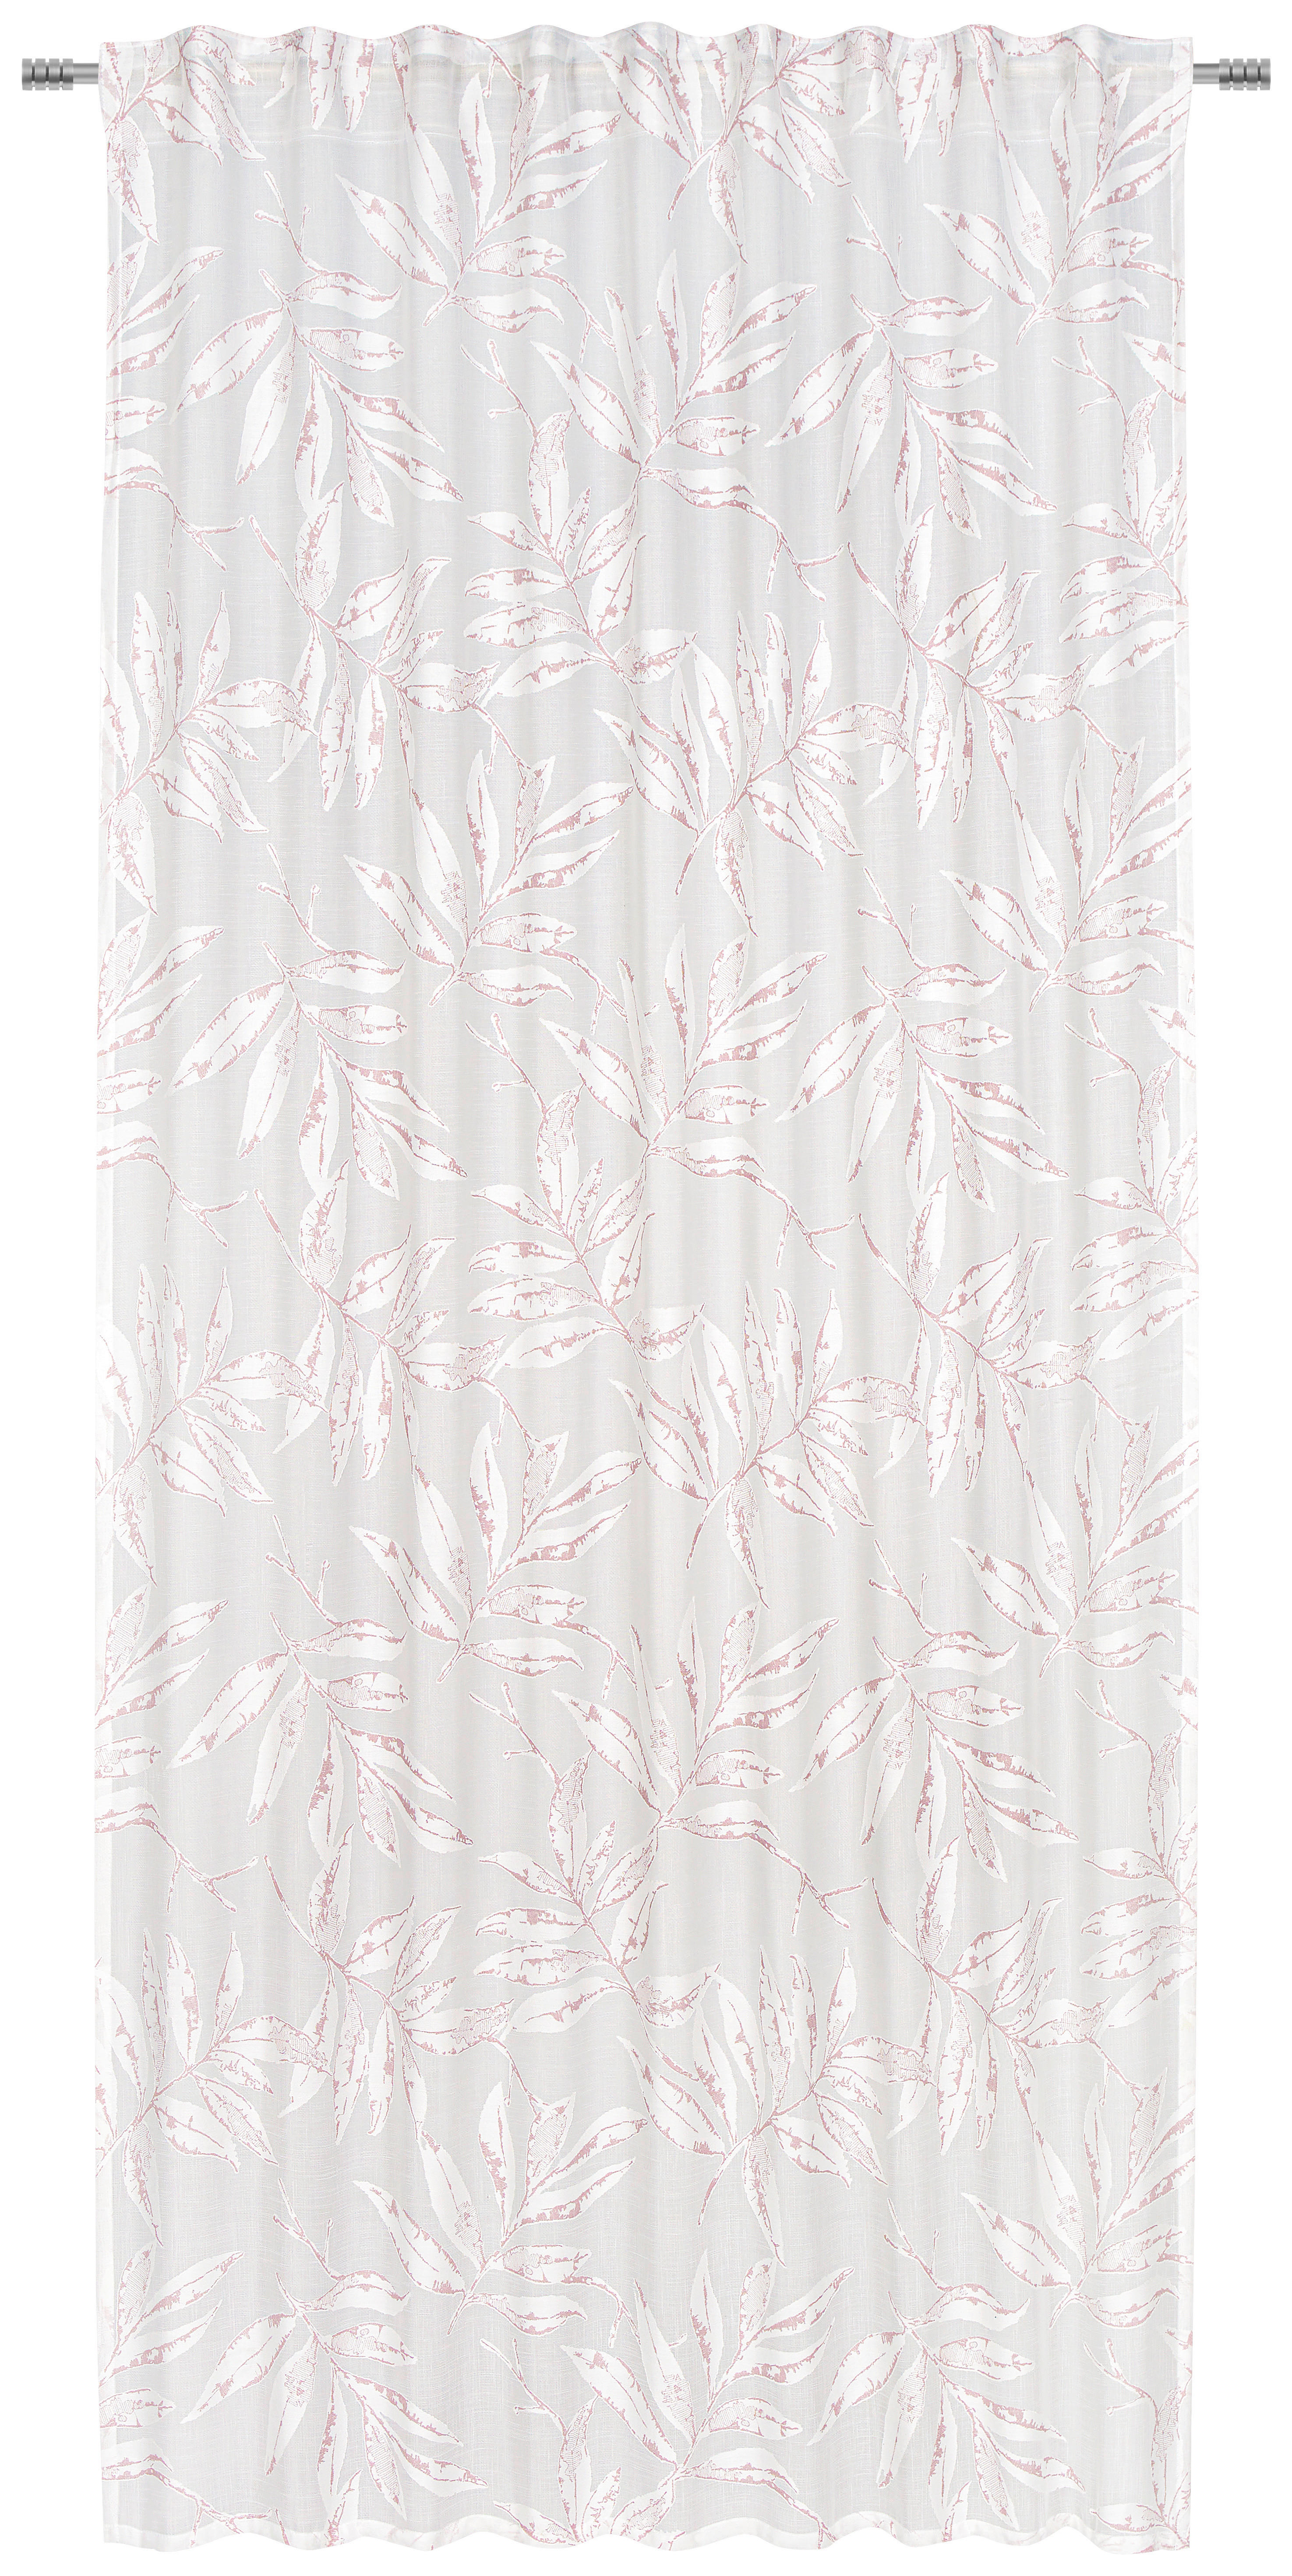 HOTOVÝ ZÁVES, polopriehľadné, 140/245 cm - biela/ružová, Design, textil (140/245cm) - Esposa